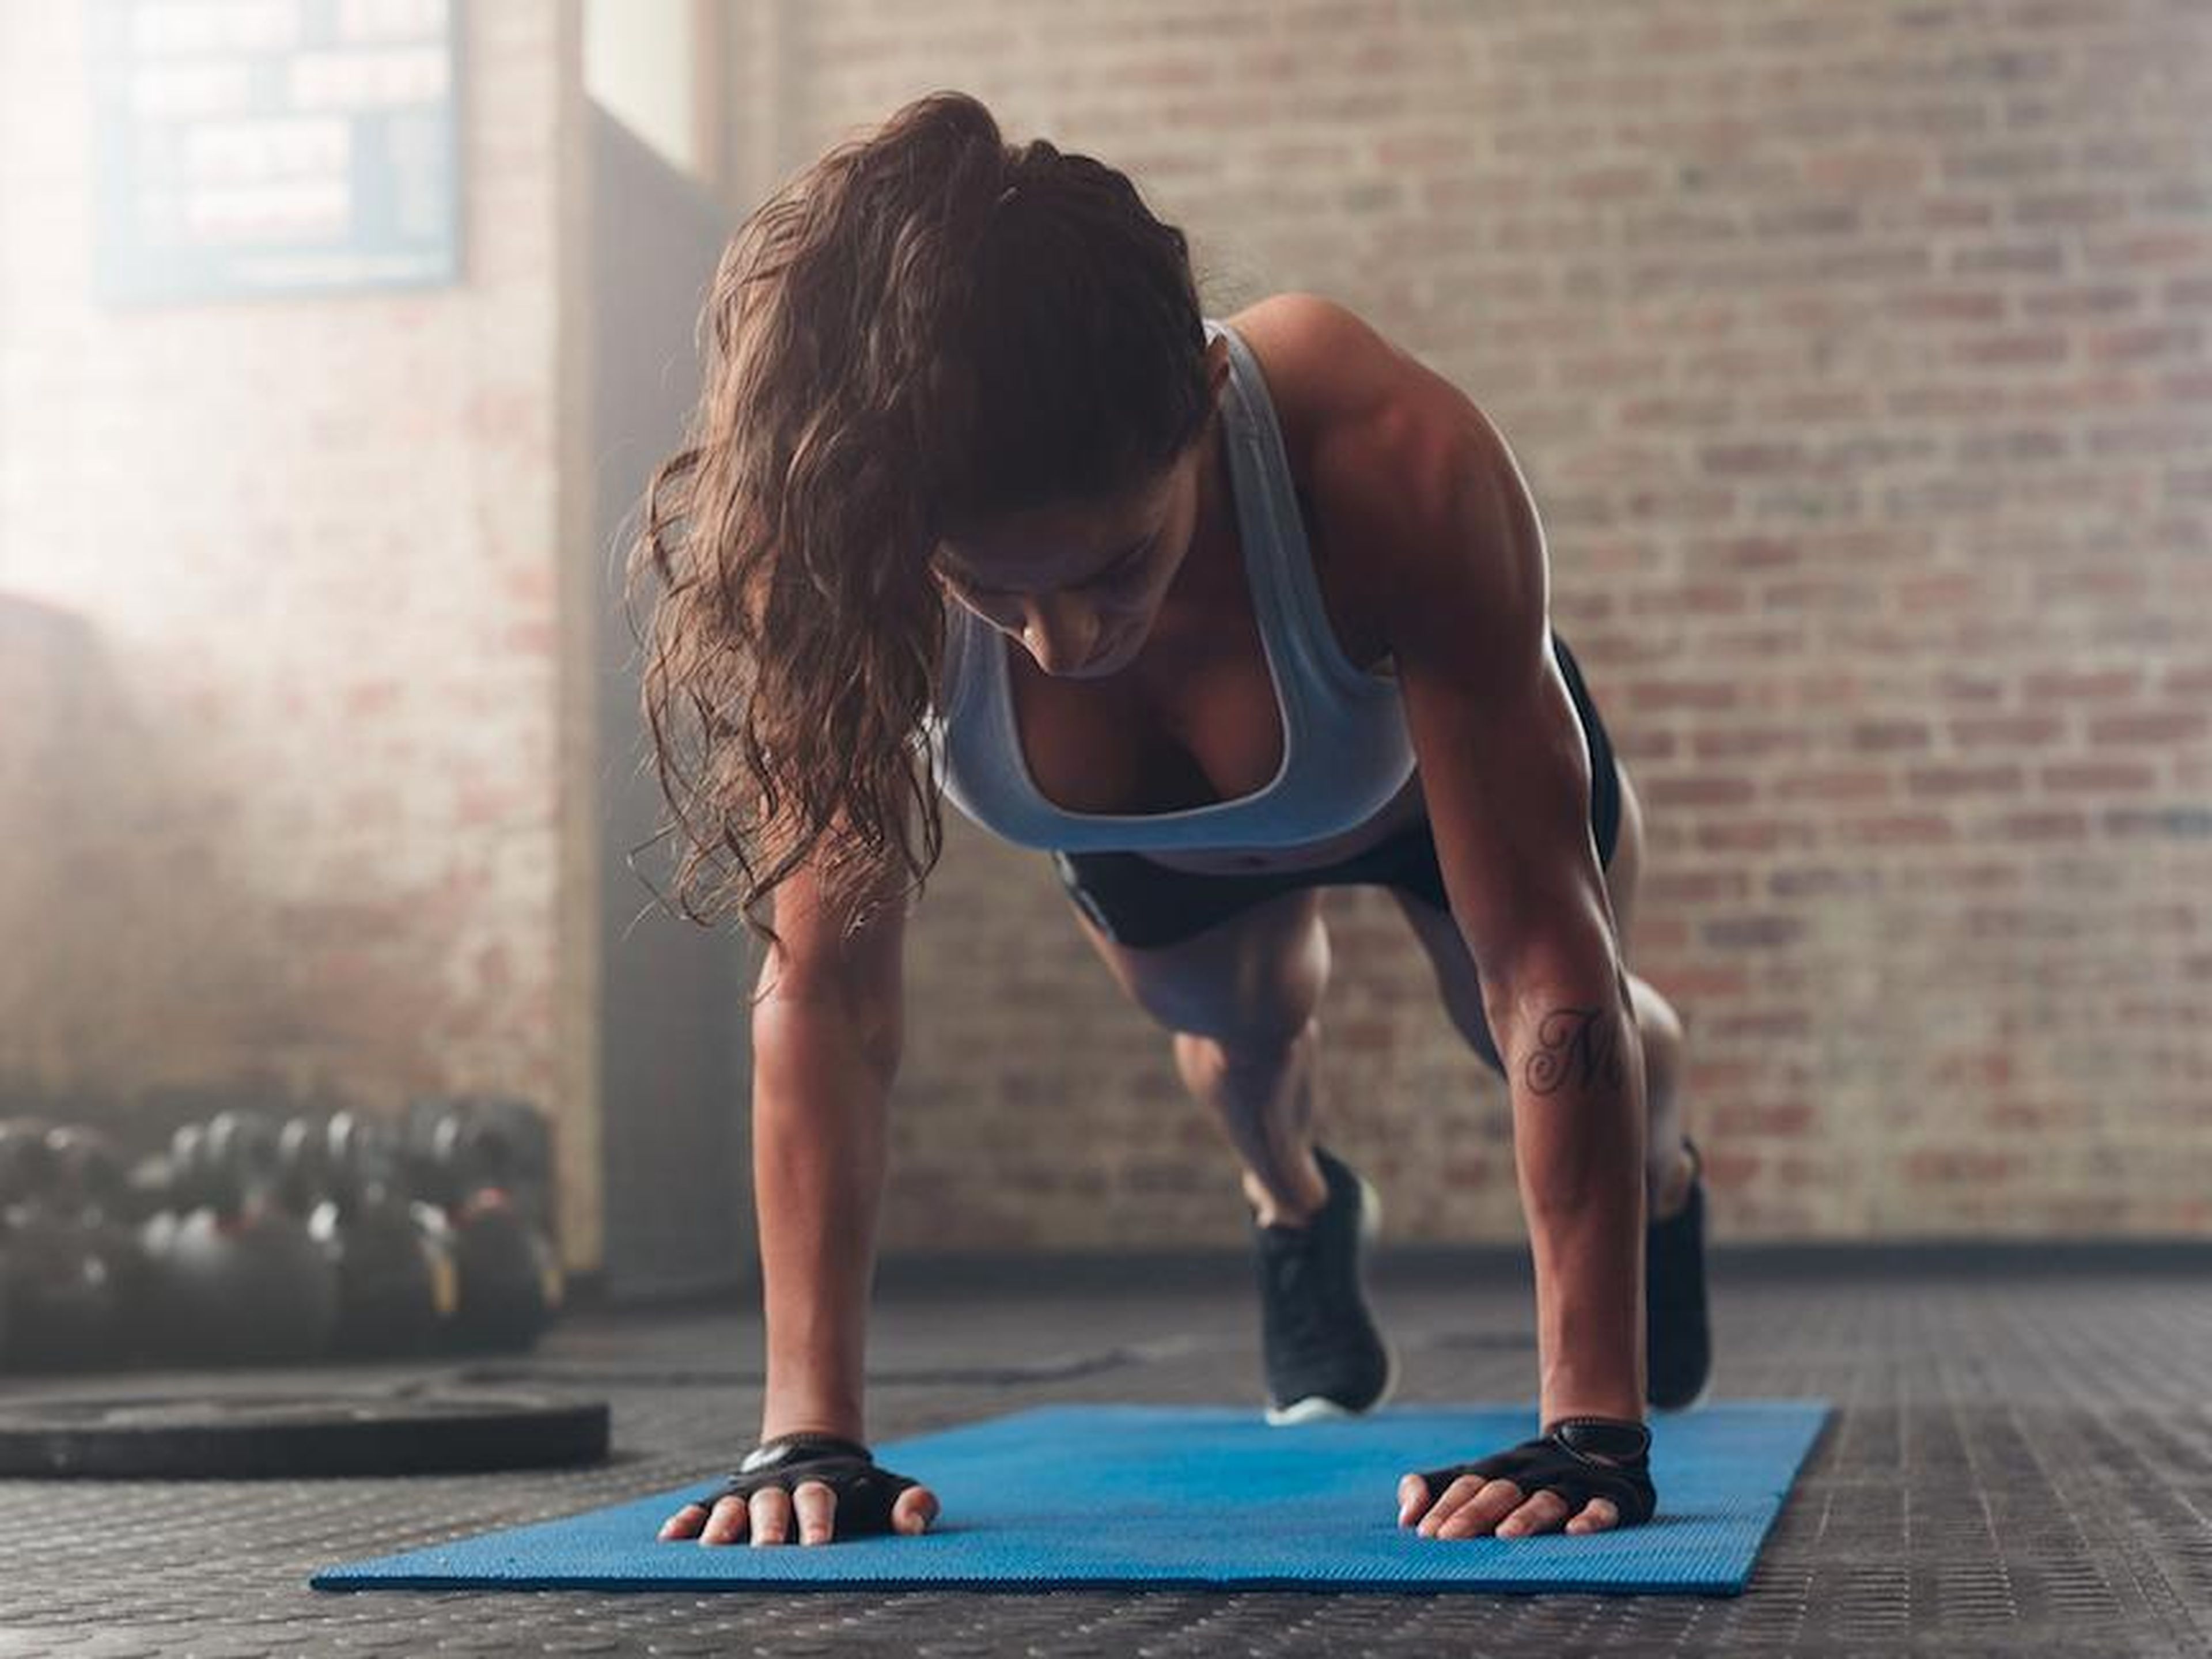 Otros tipos de entrenamiento muscular pueden incluir movimientos como abdominales o sentadillas